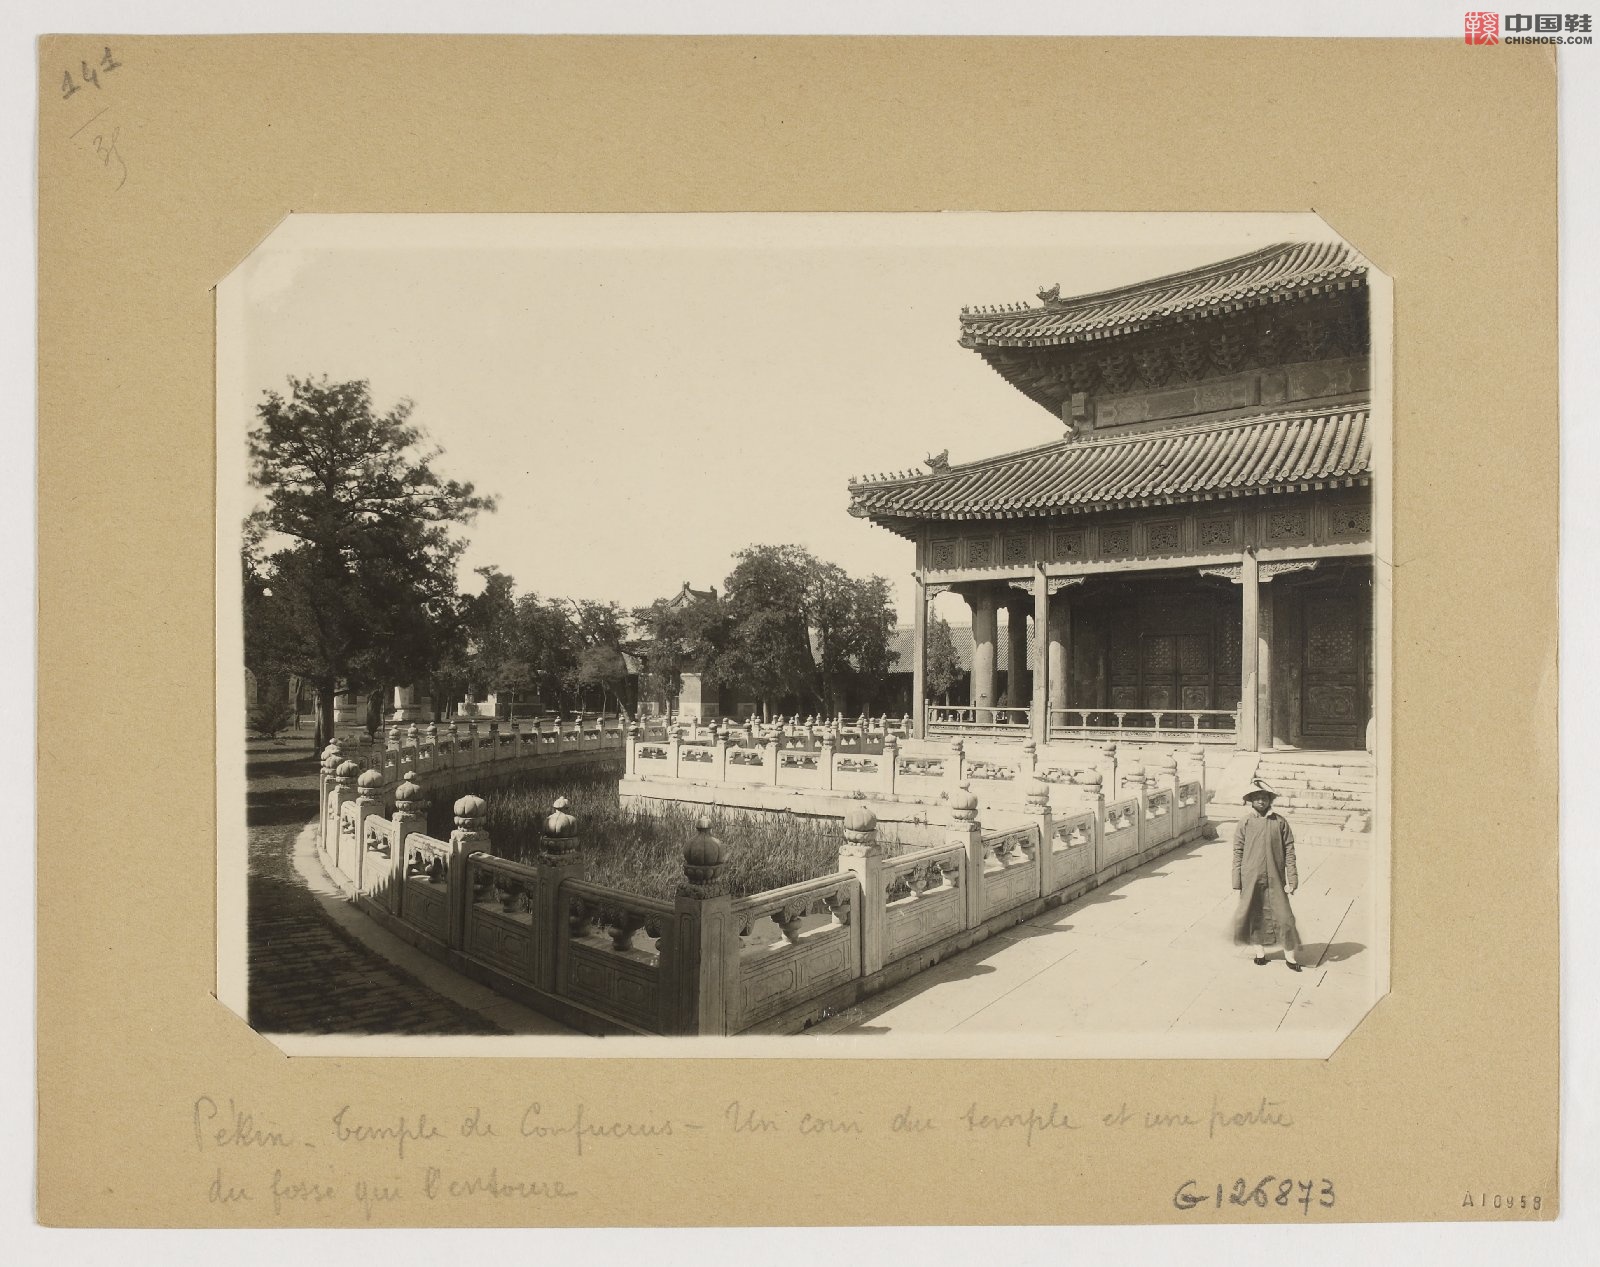 拉里贝的中国影像记录.415幅.By Firmin Laribe.1900-1910年_Page_356.jpg